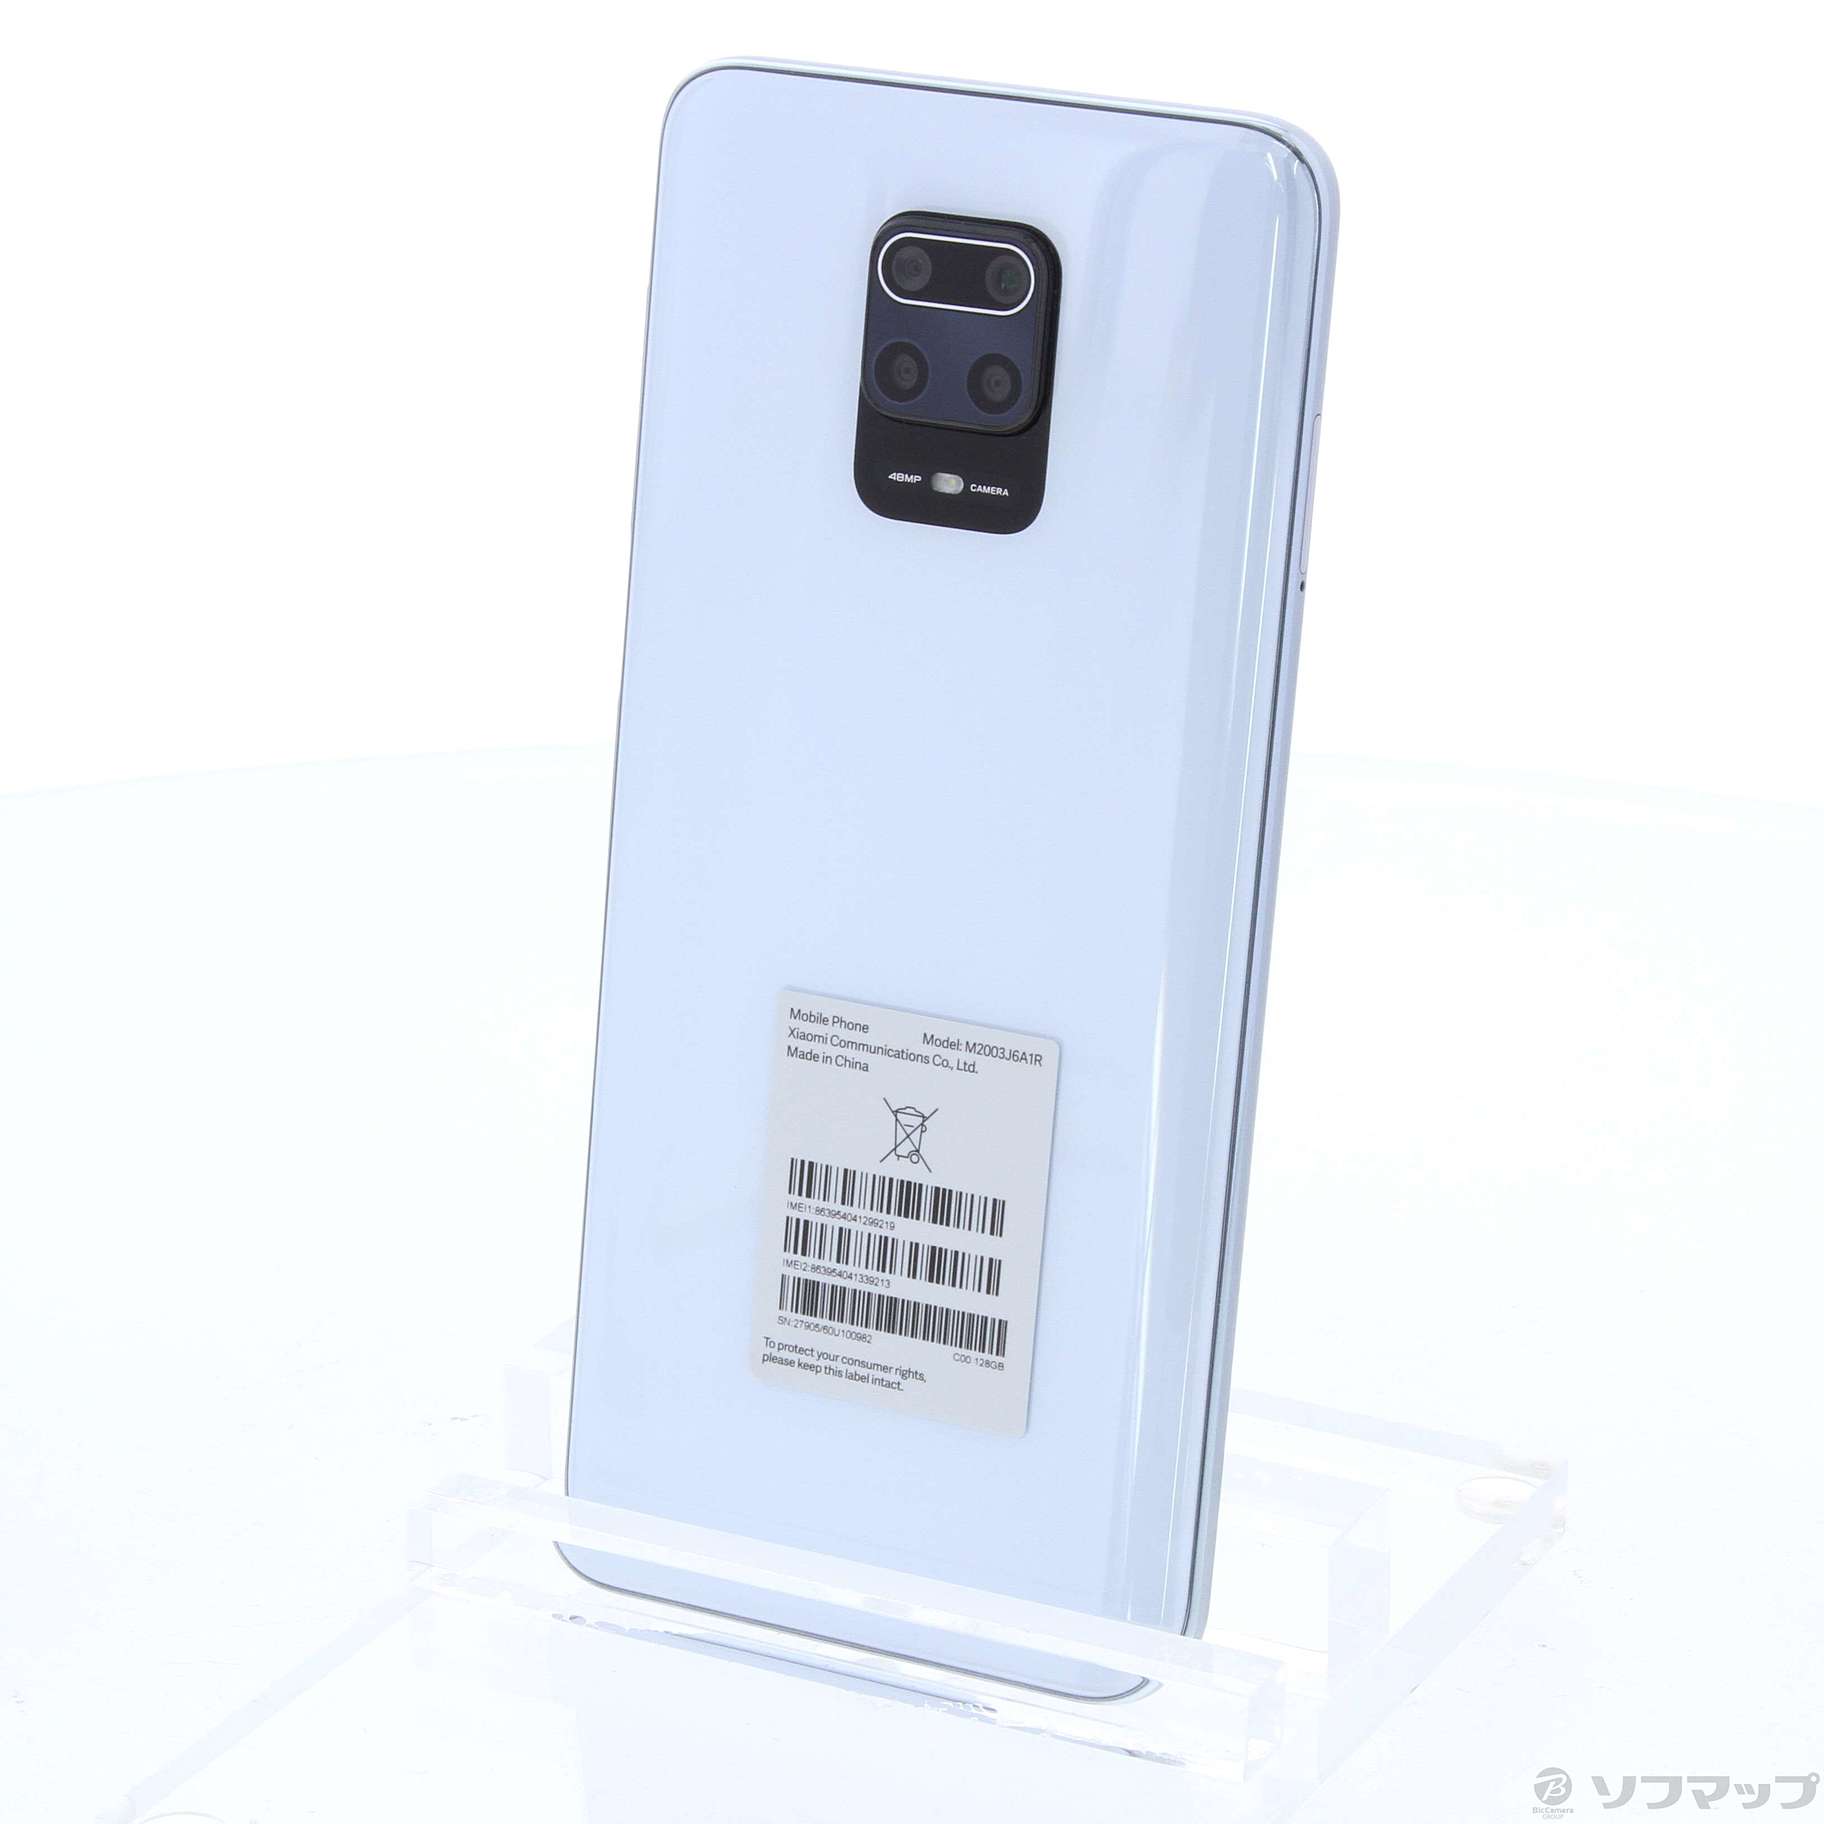 中古】Redmi Note 9S 128GB グレイシャーホワイト M2003J6A1R SIM ...